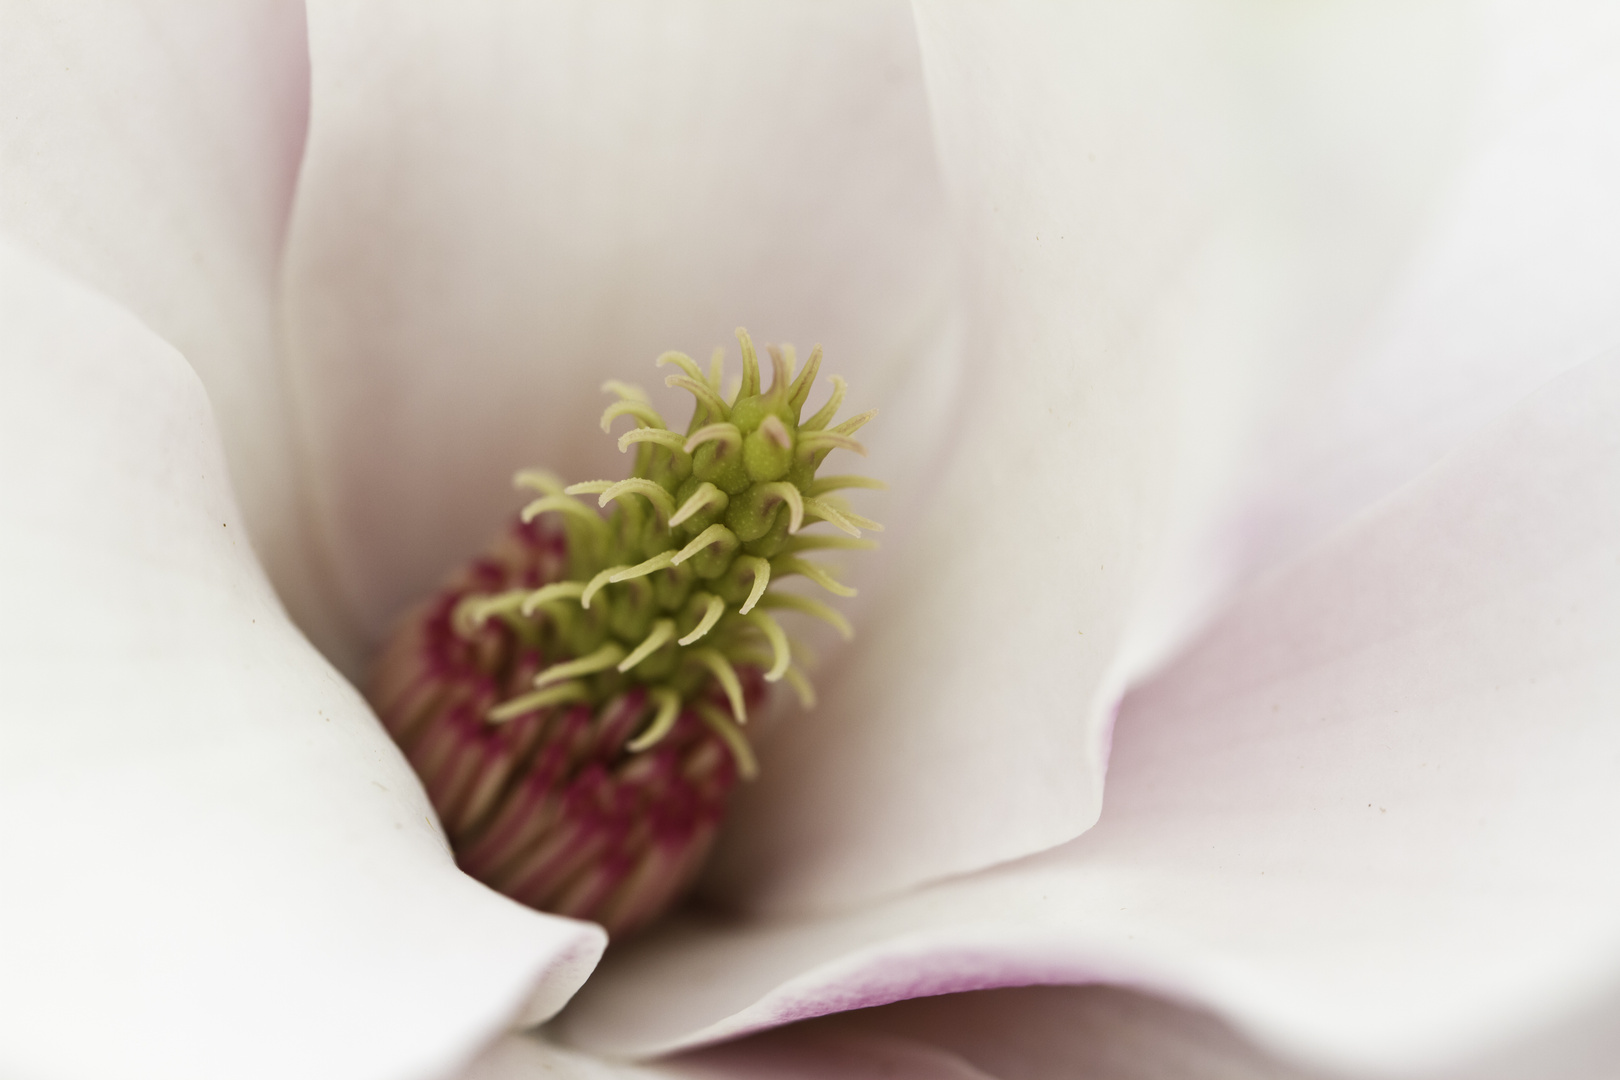 inside the magnolia